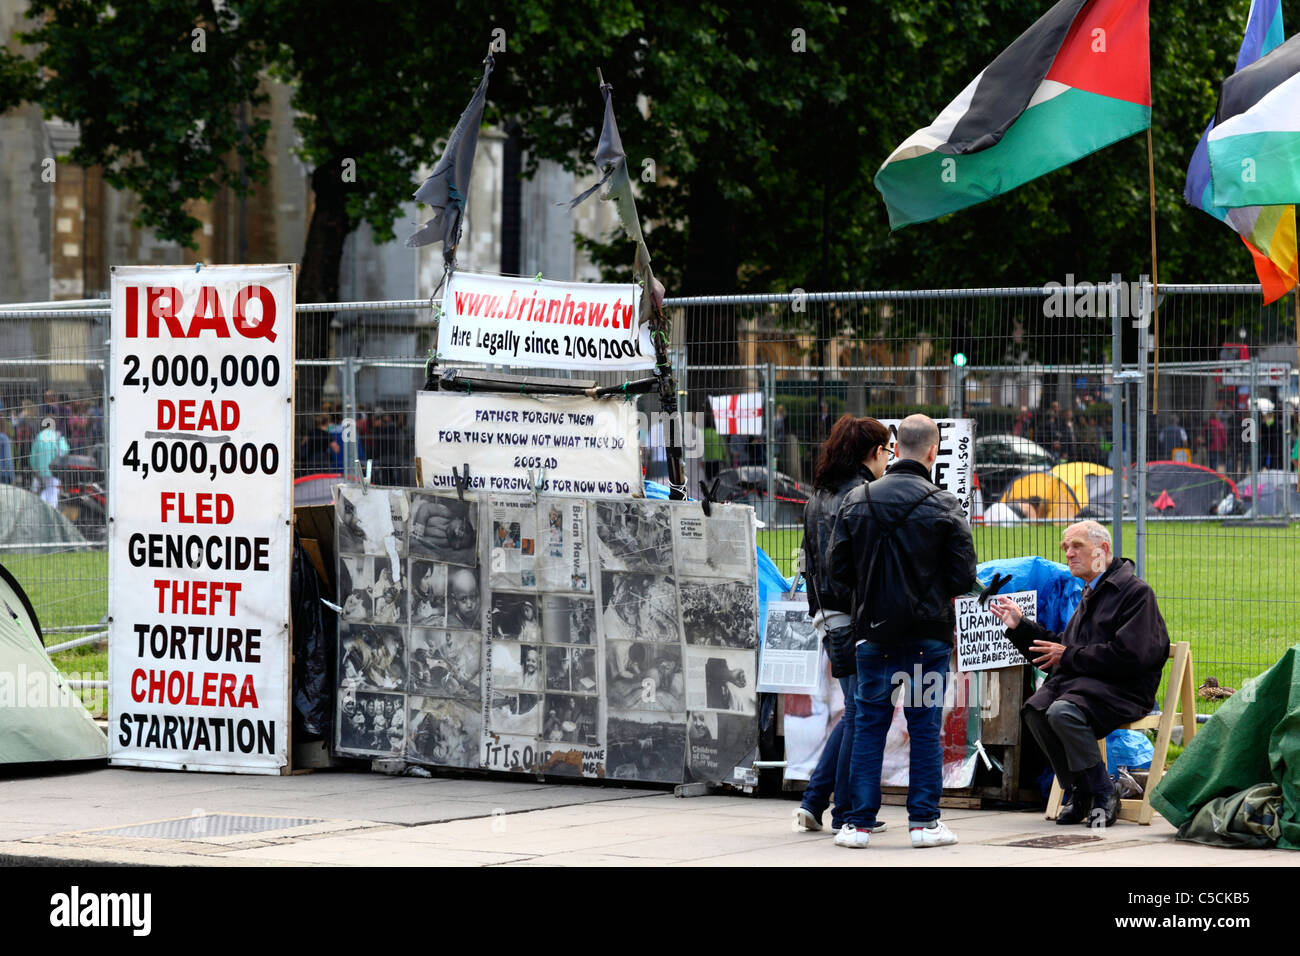 Vue de la campagne de paix de Parliament Square / camp de paix de Brian Haw, Parliament Square, Westminster, Londres, Royaume-Uni Banque D'Images